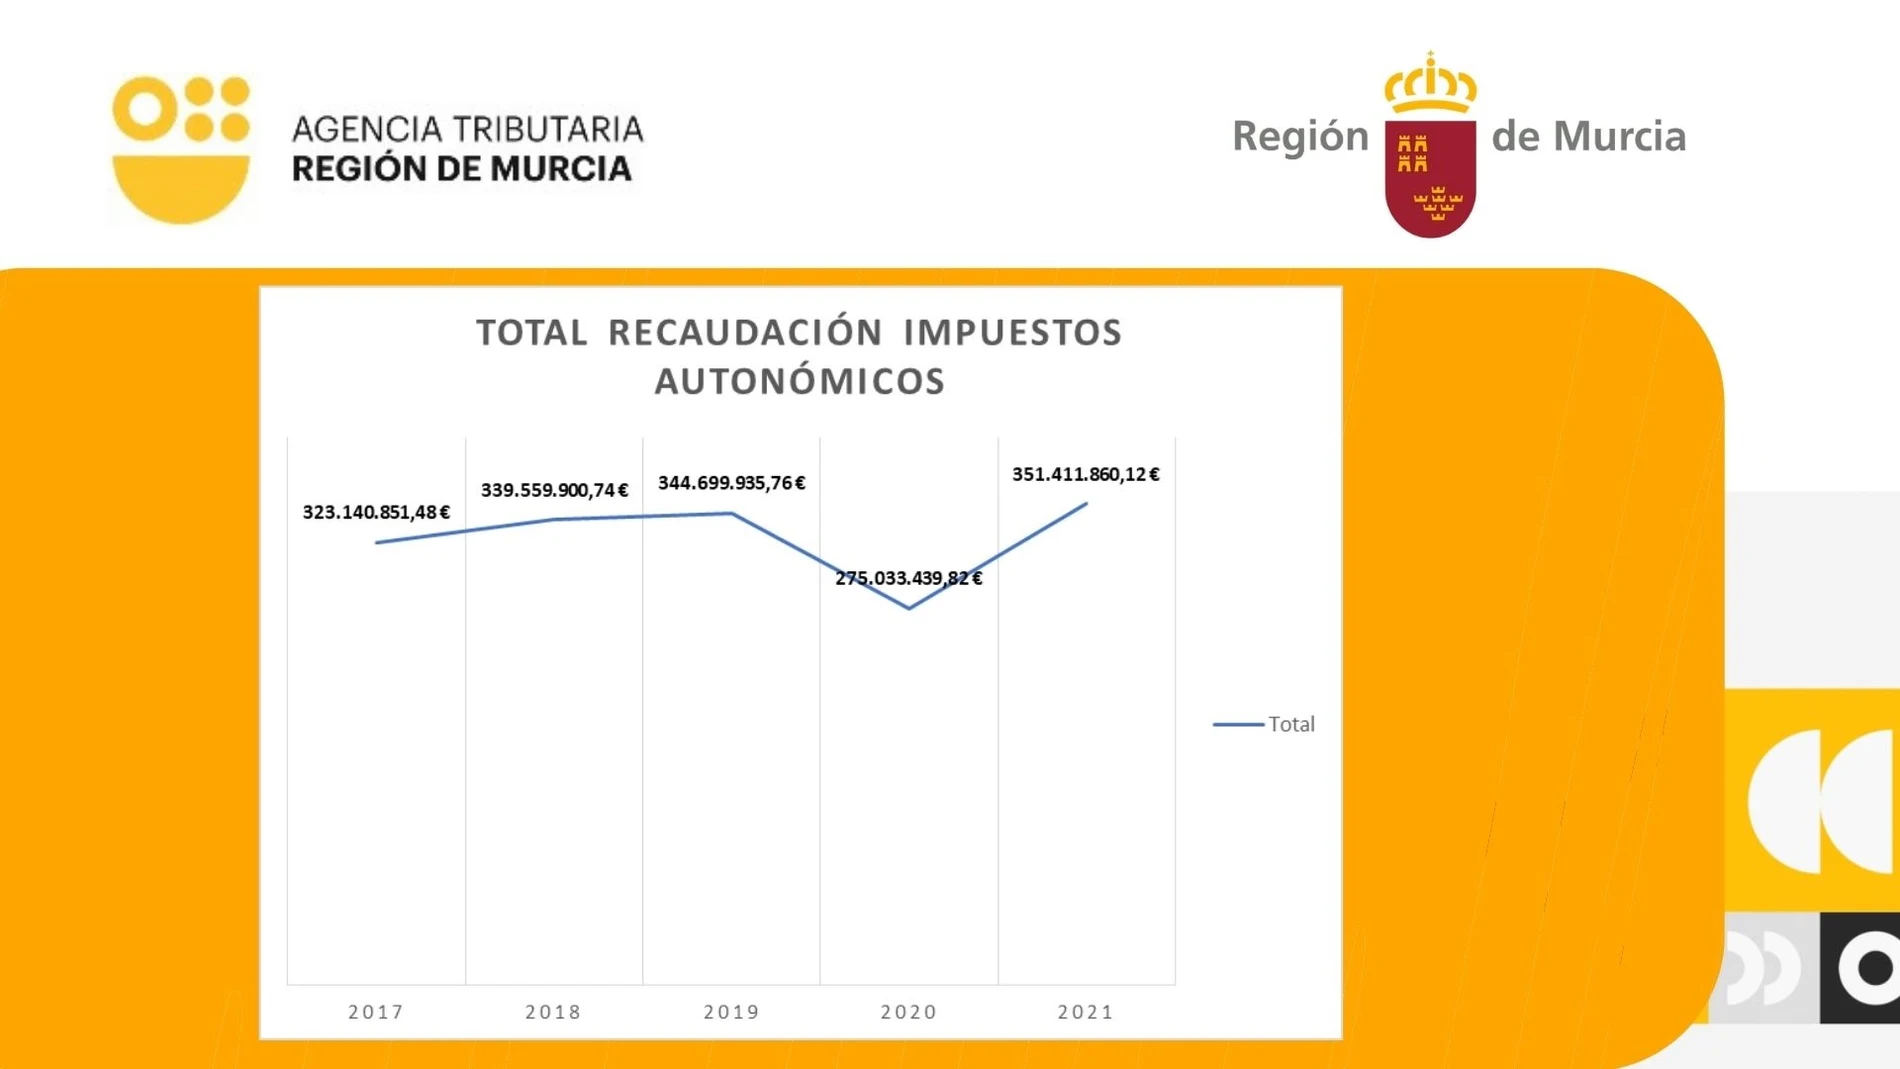 Gráfico de la evolución anual de la recaudación de impuestos autonómicos por la Agencia Tributaria de la Región de Murcia.